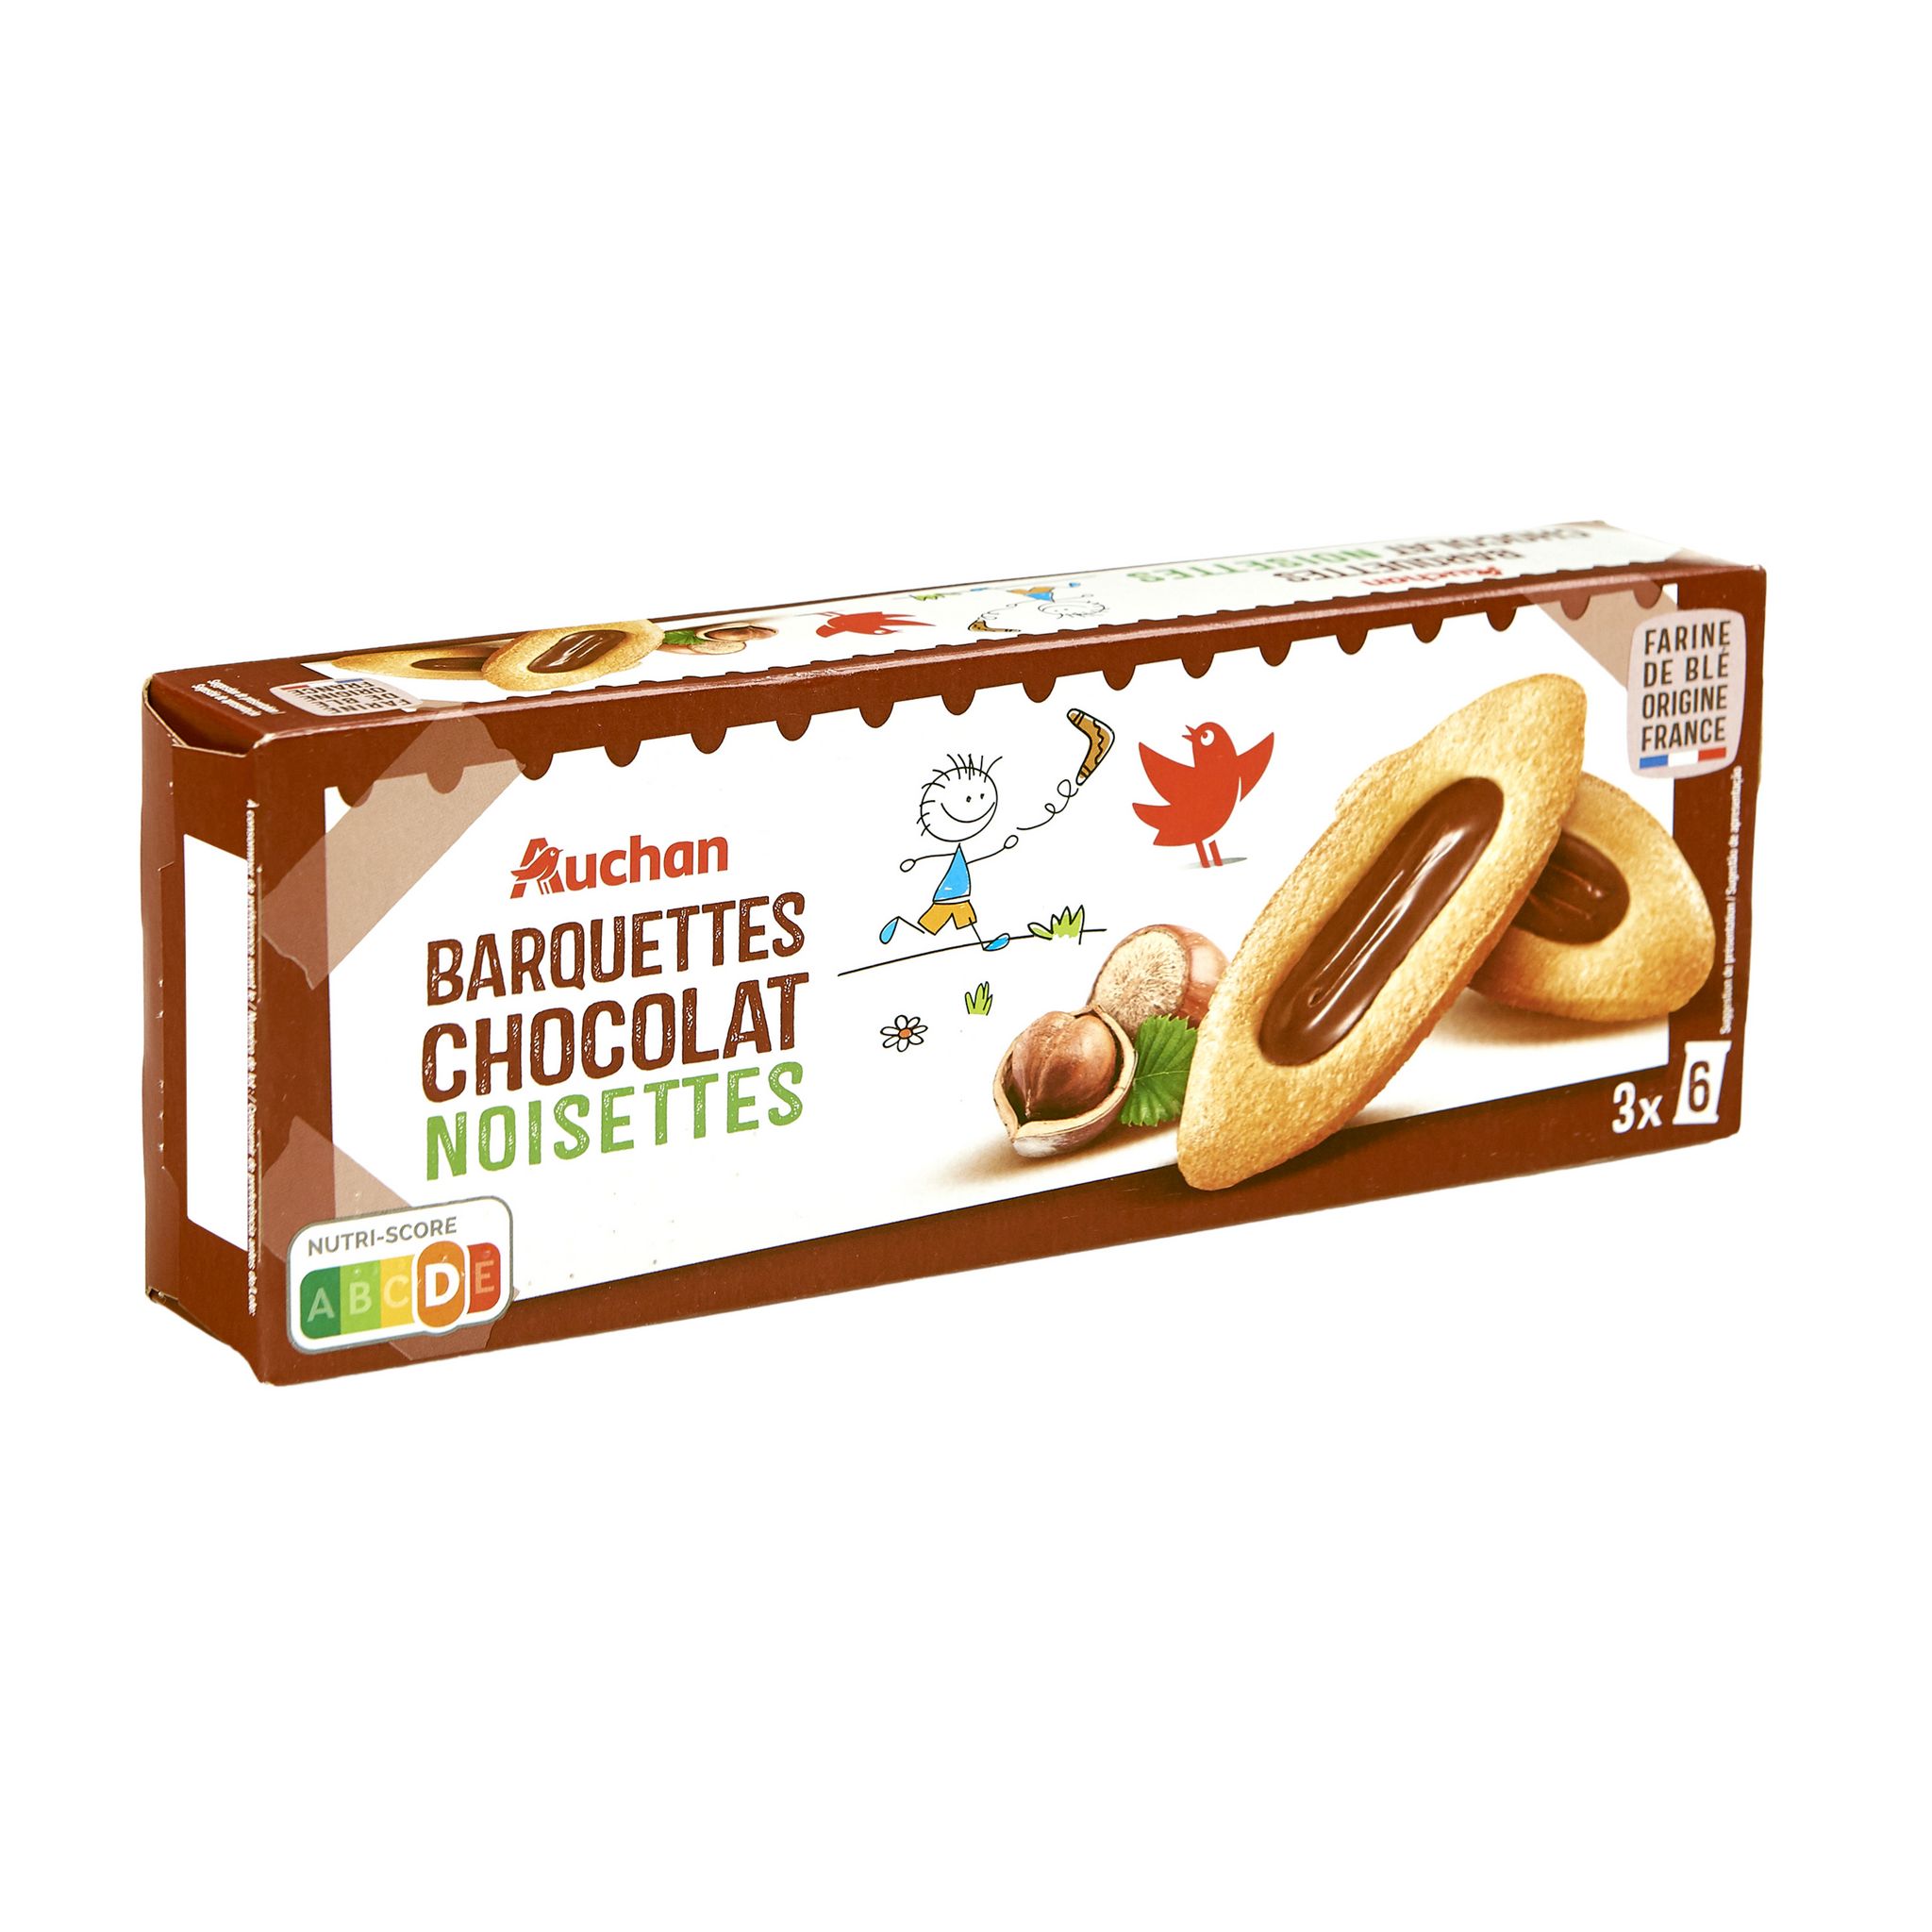 AUCHAN Barquettes chocolat-noisettes, sachets fraîcheur 3x6